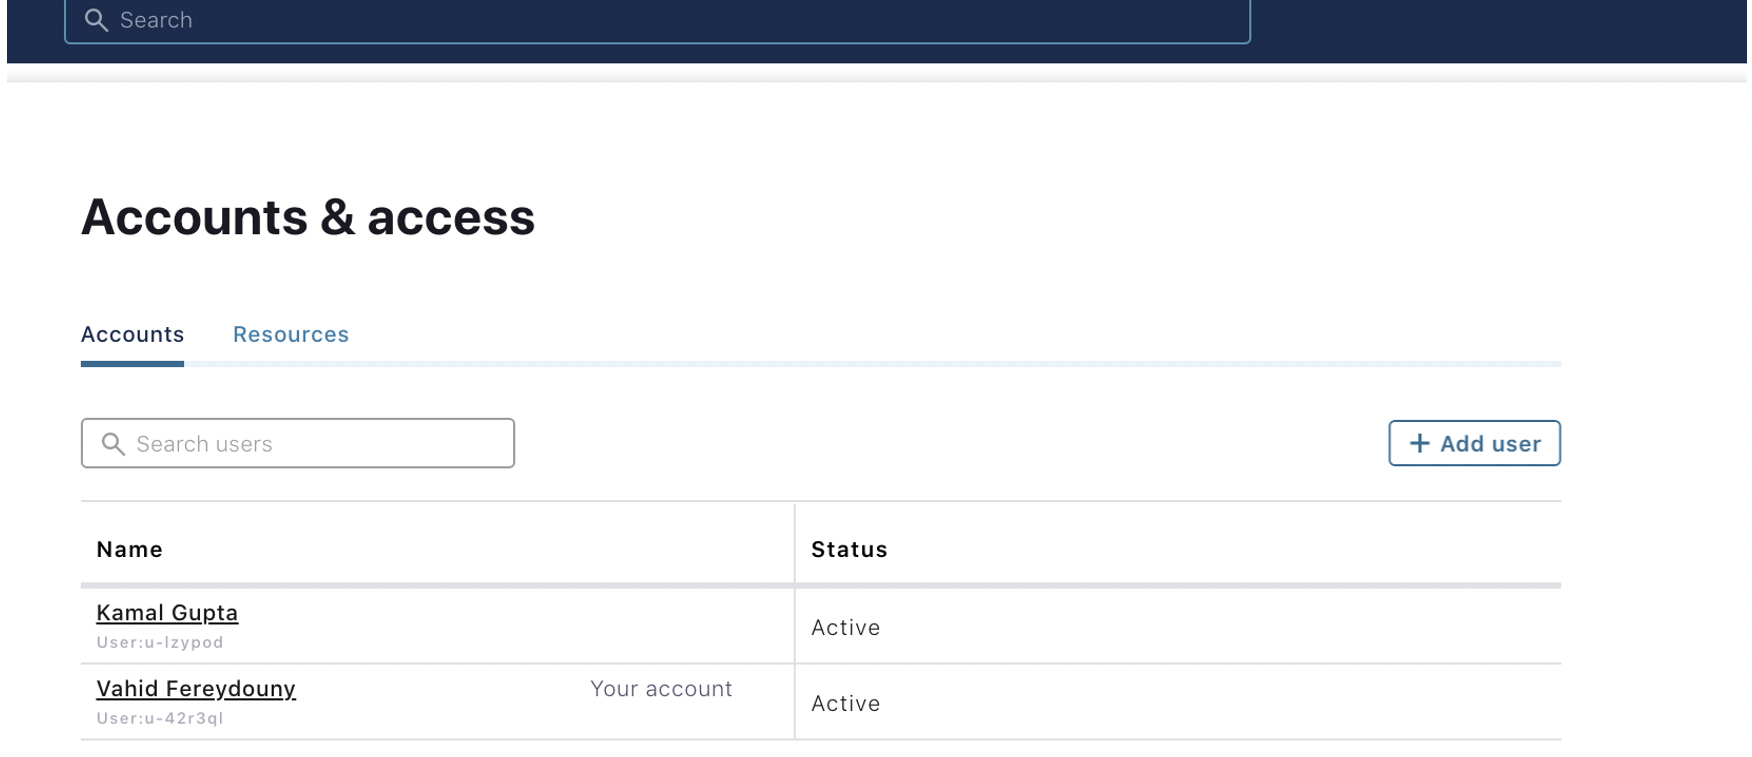 Accounts & access: Accounts